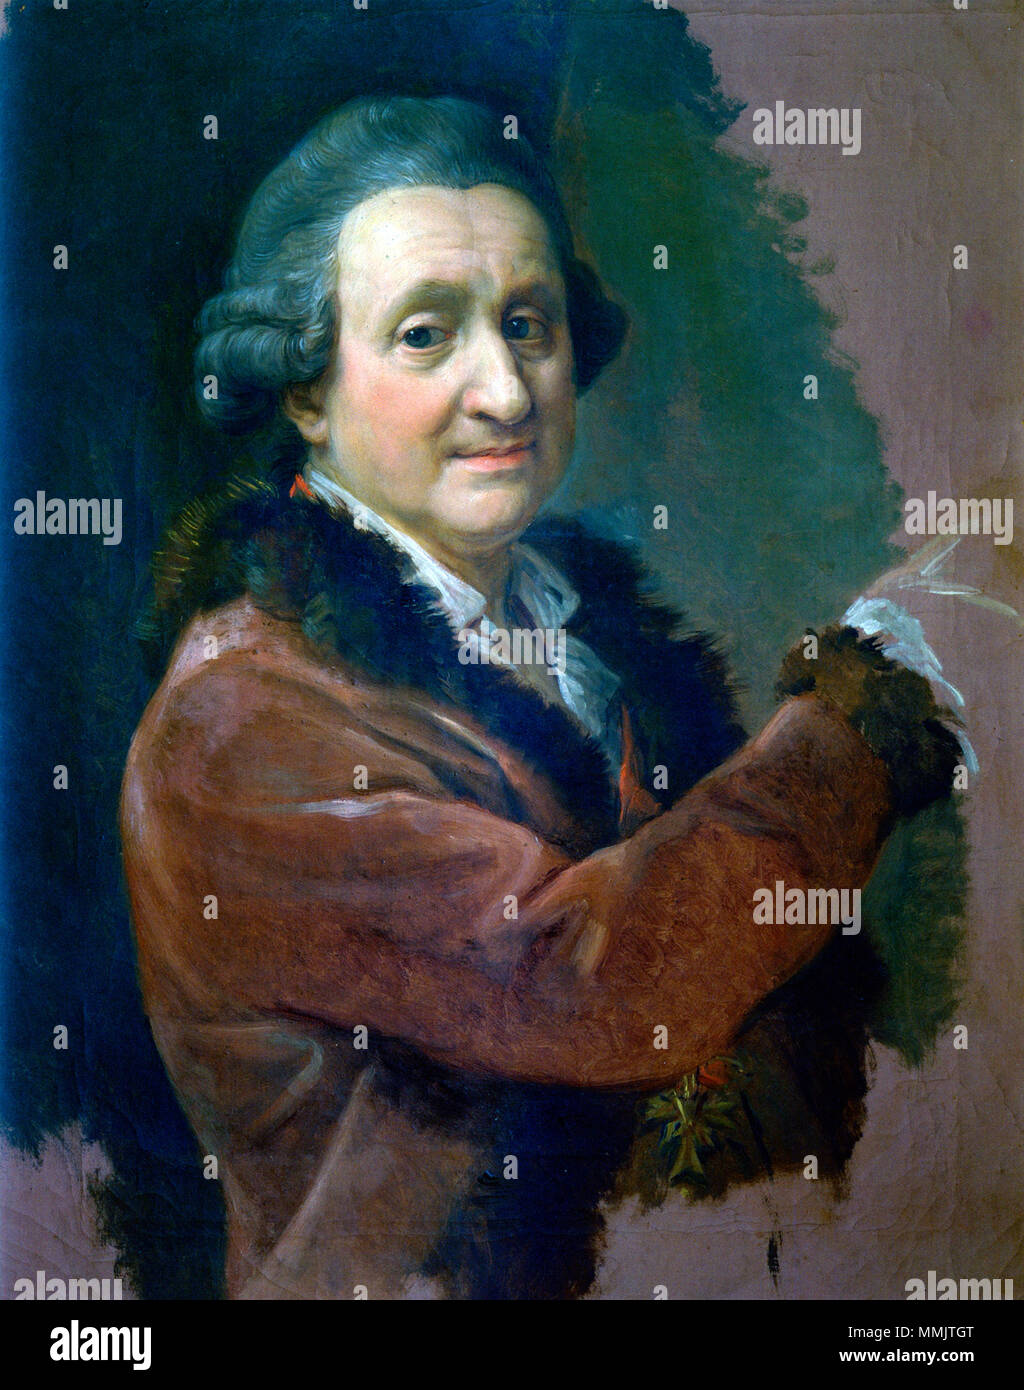 L'auto-portrait. Entre 1773 et 1774. Pompeo batoni--peinture-self-portrait Banque D'Images